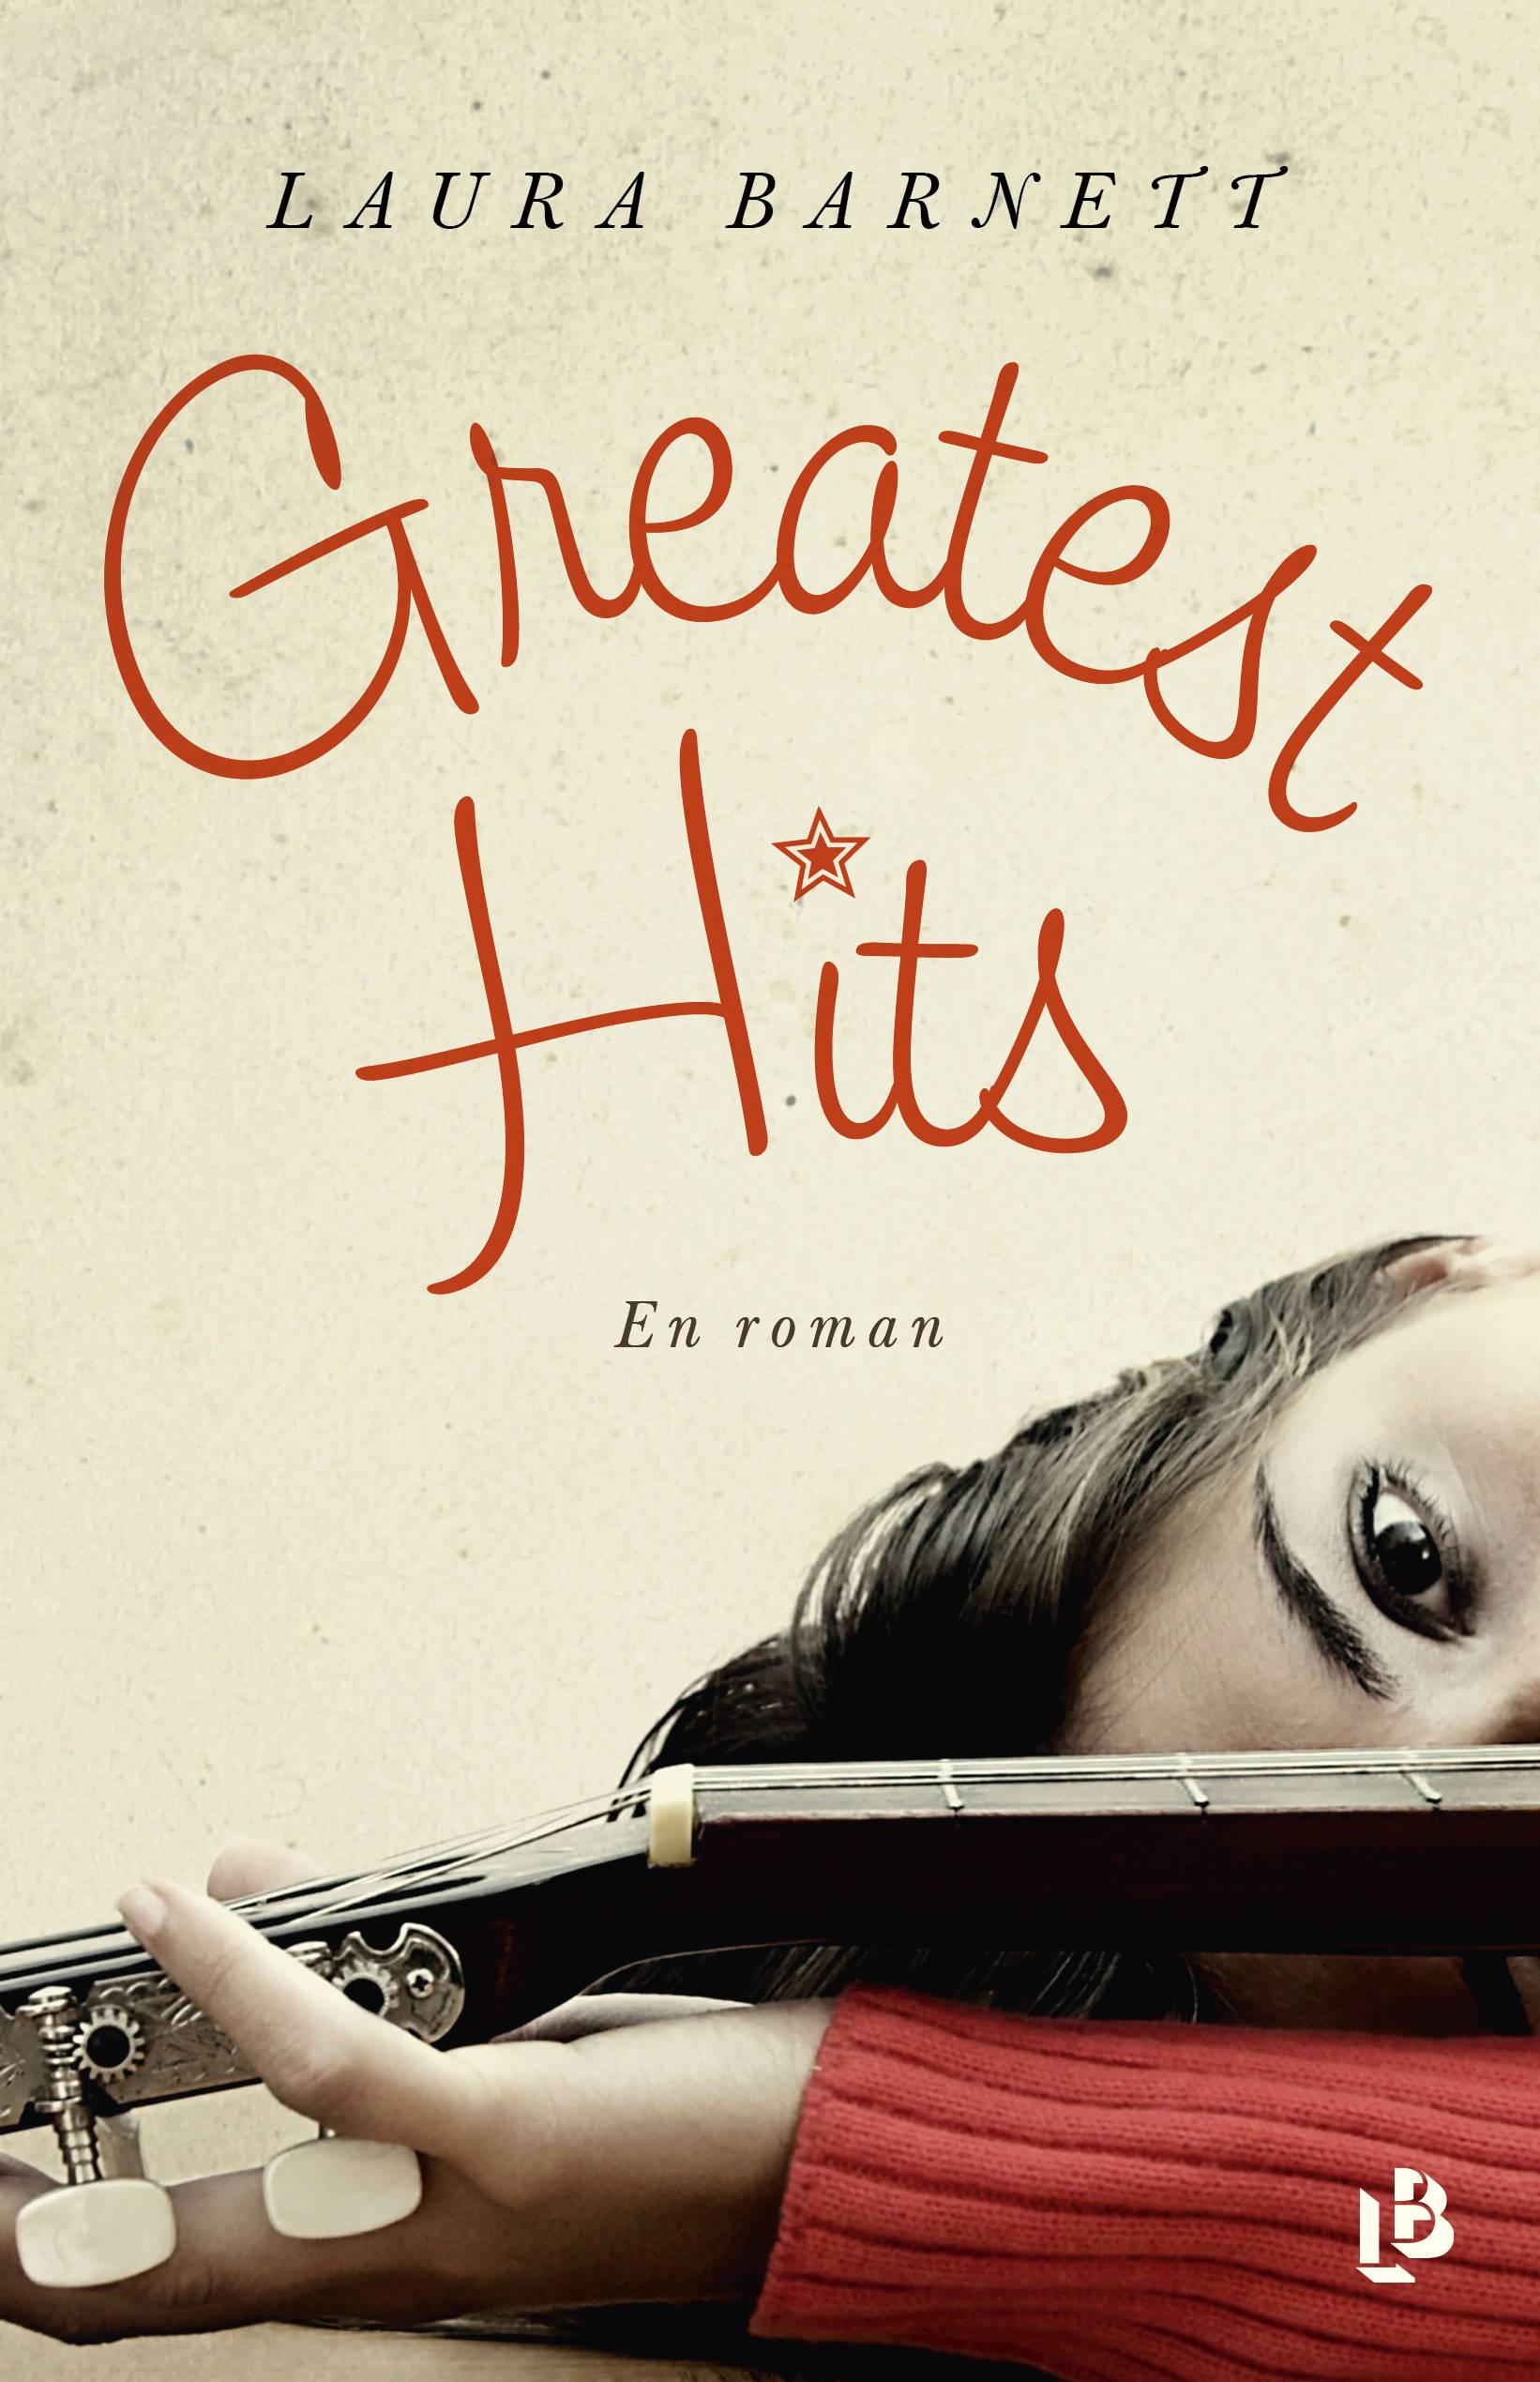 Greatest hits : en roman